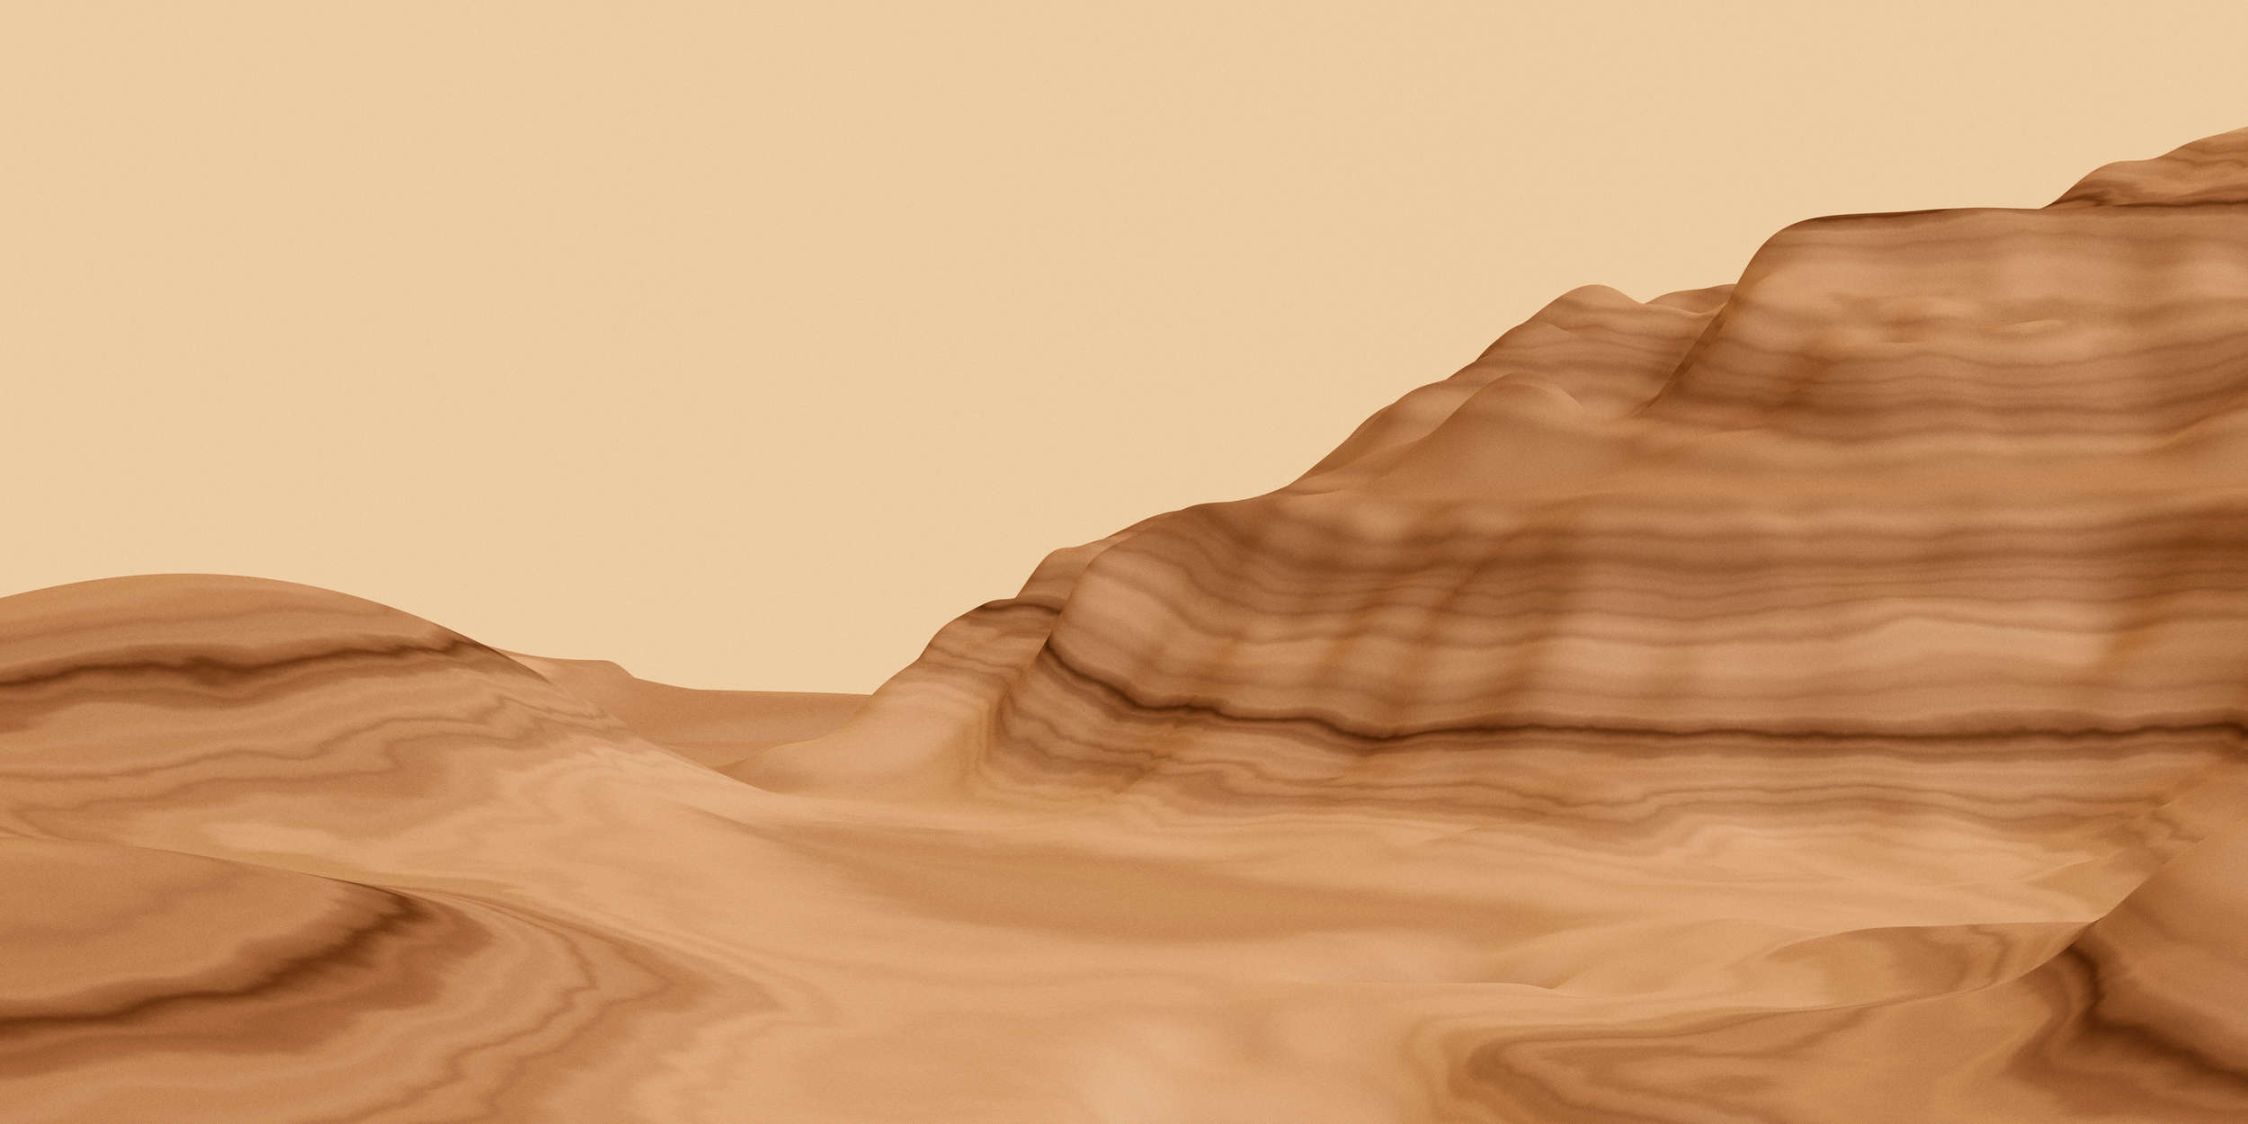             Photo wallpaper »luke« - Abstract desert landscape - Matt, Smooth non-woven fabric
        